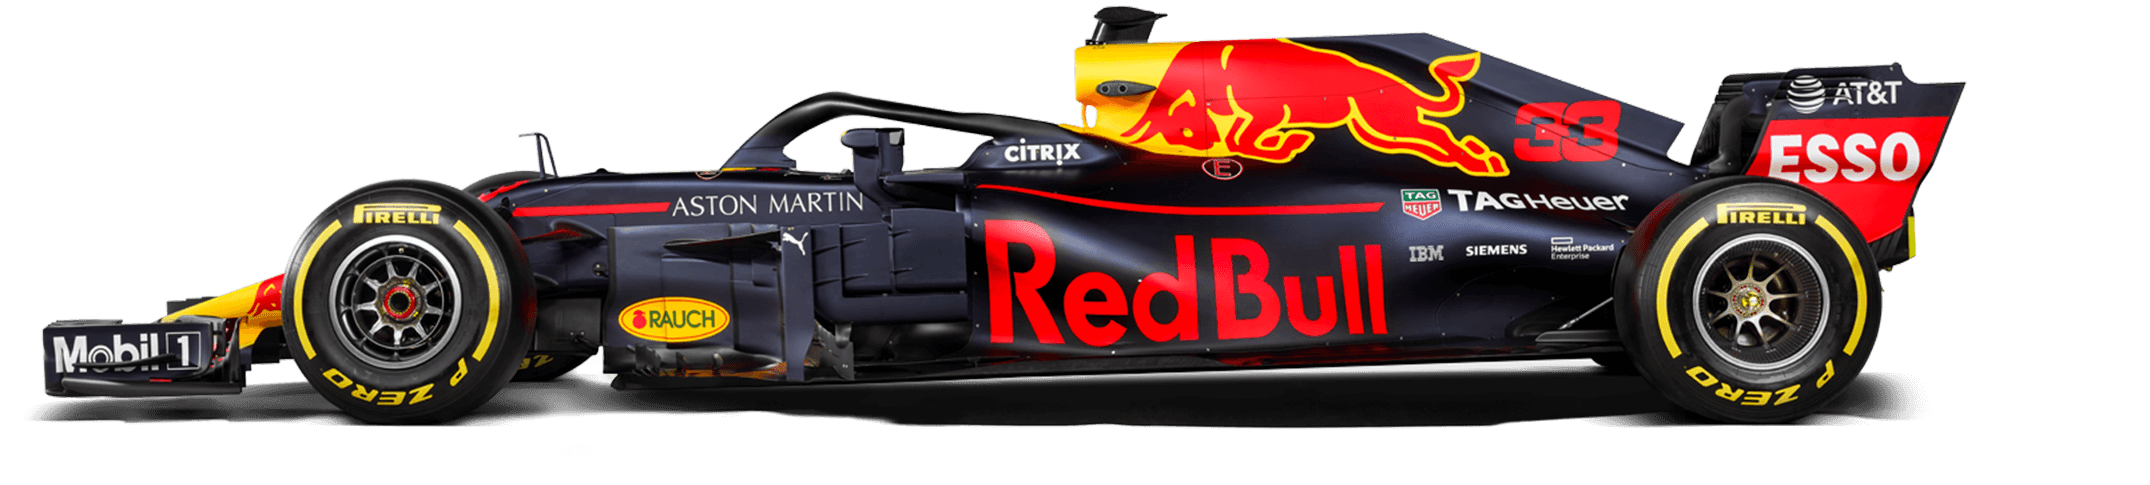 マックス フェルスタッペン レッドブル レーシング F1